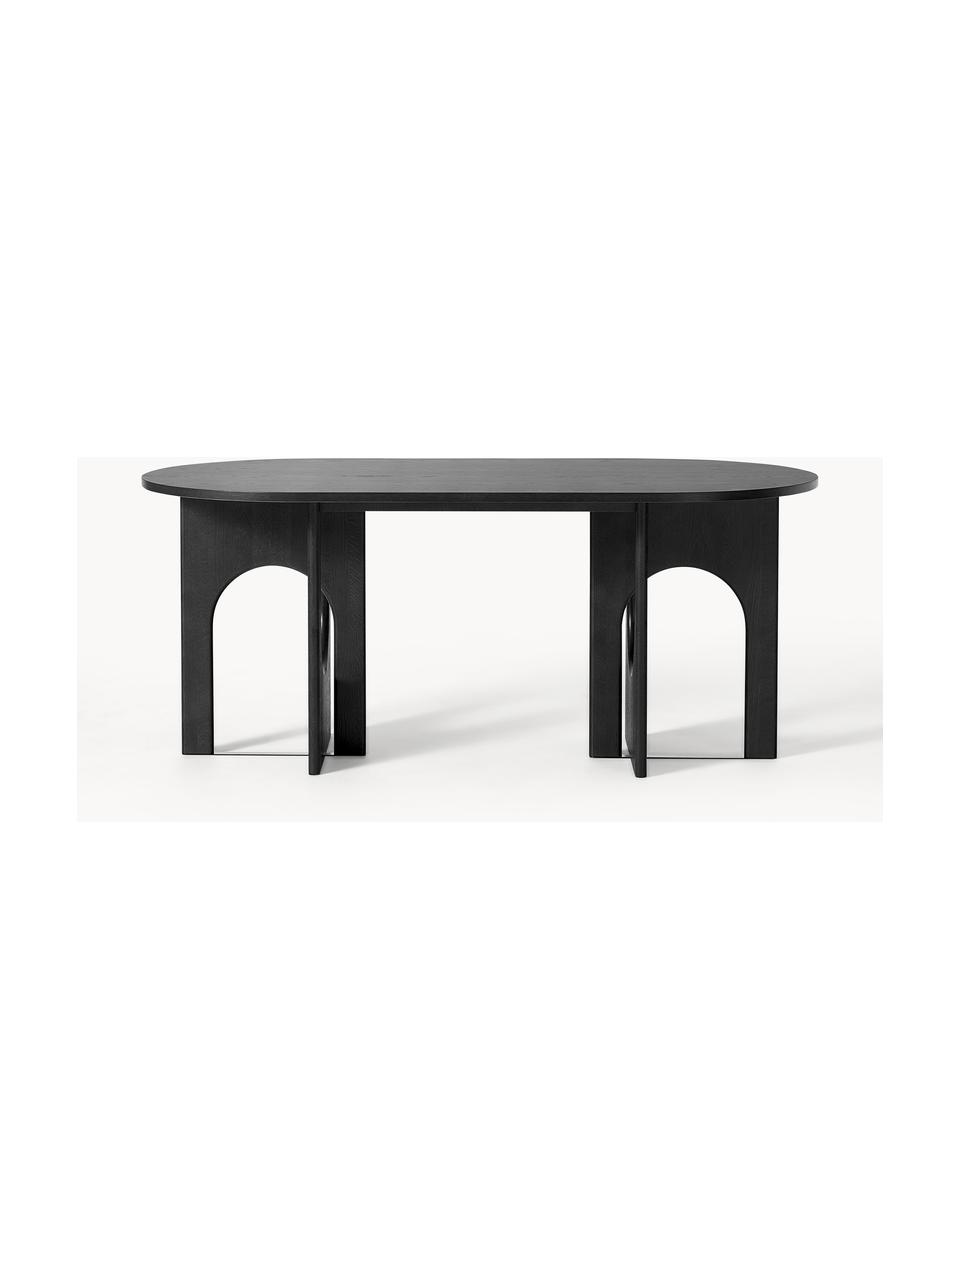 Ovaler Esstisch Apollo, in verschiedenen Grössen, Tischplatte: Eichenholzfurnier, lackie, Beine: Eichenholz, lackiert, Met, Eichenholz, schwarz lackiert, B 200 x T 90 cm